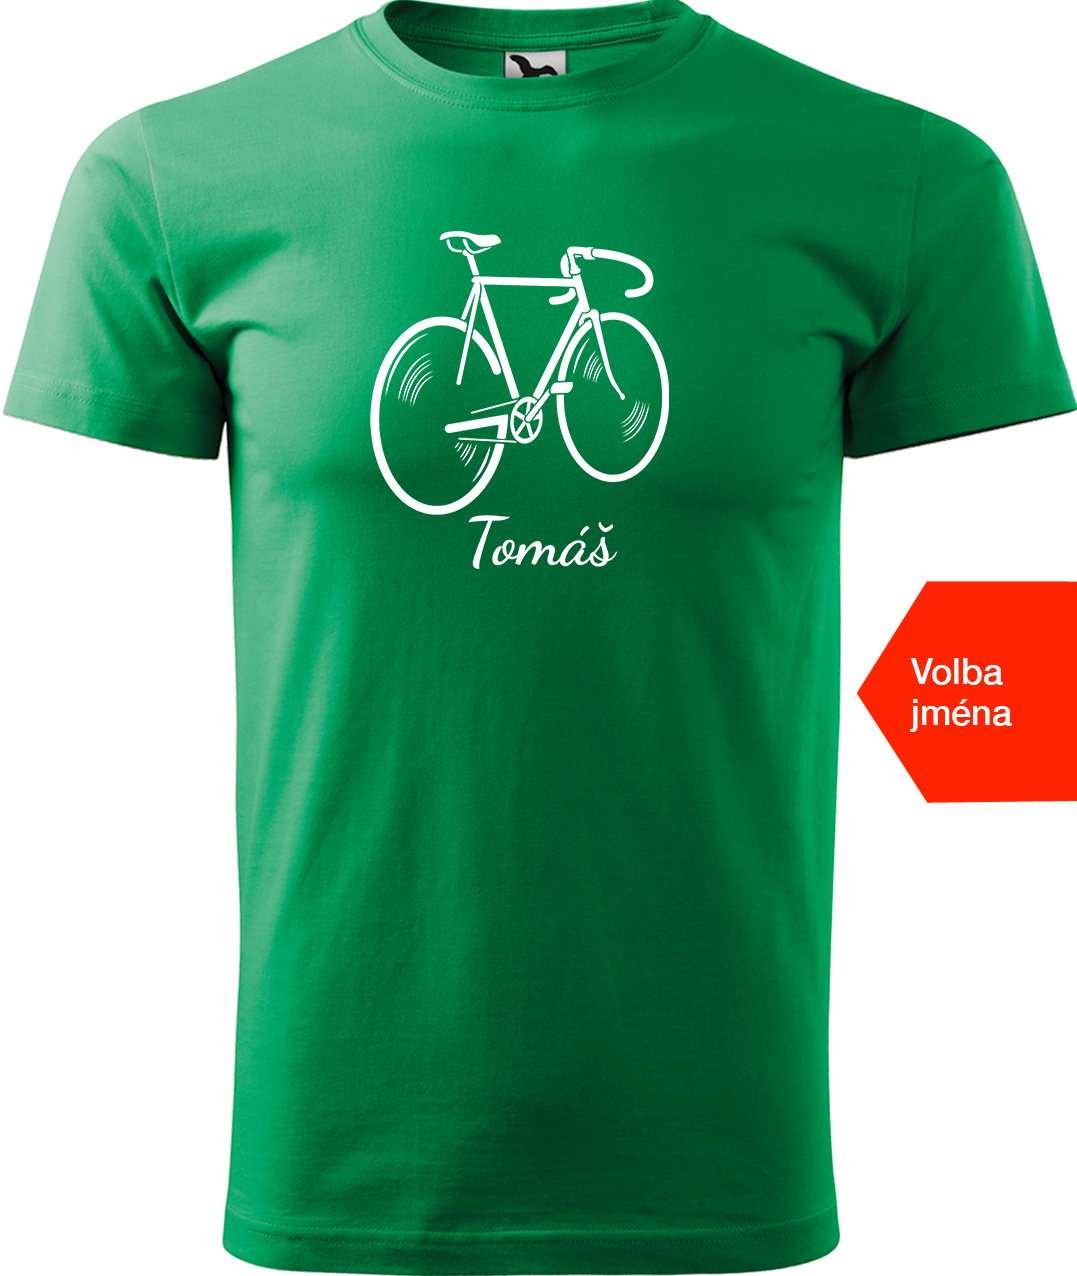 Pánské tričko s kolem a jménem - Pánské kolo Velikost: 4XL, Barva: Středně zelená (16)